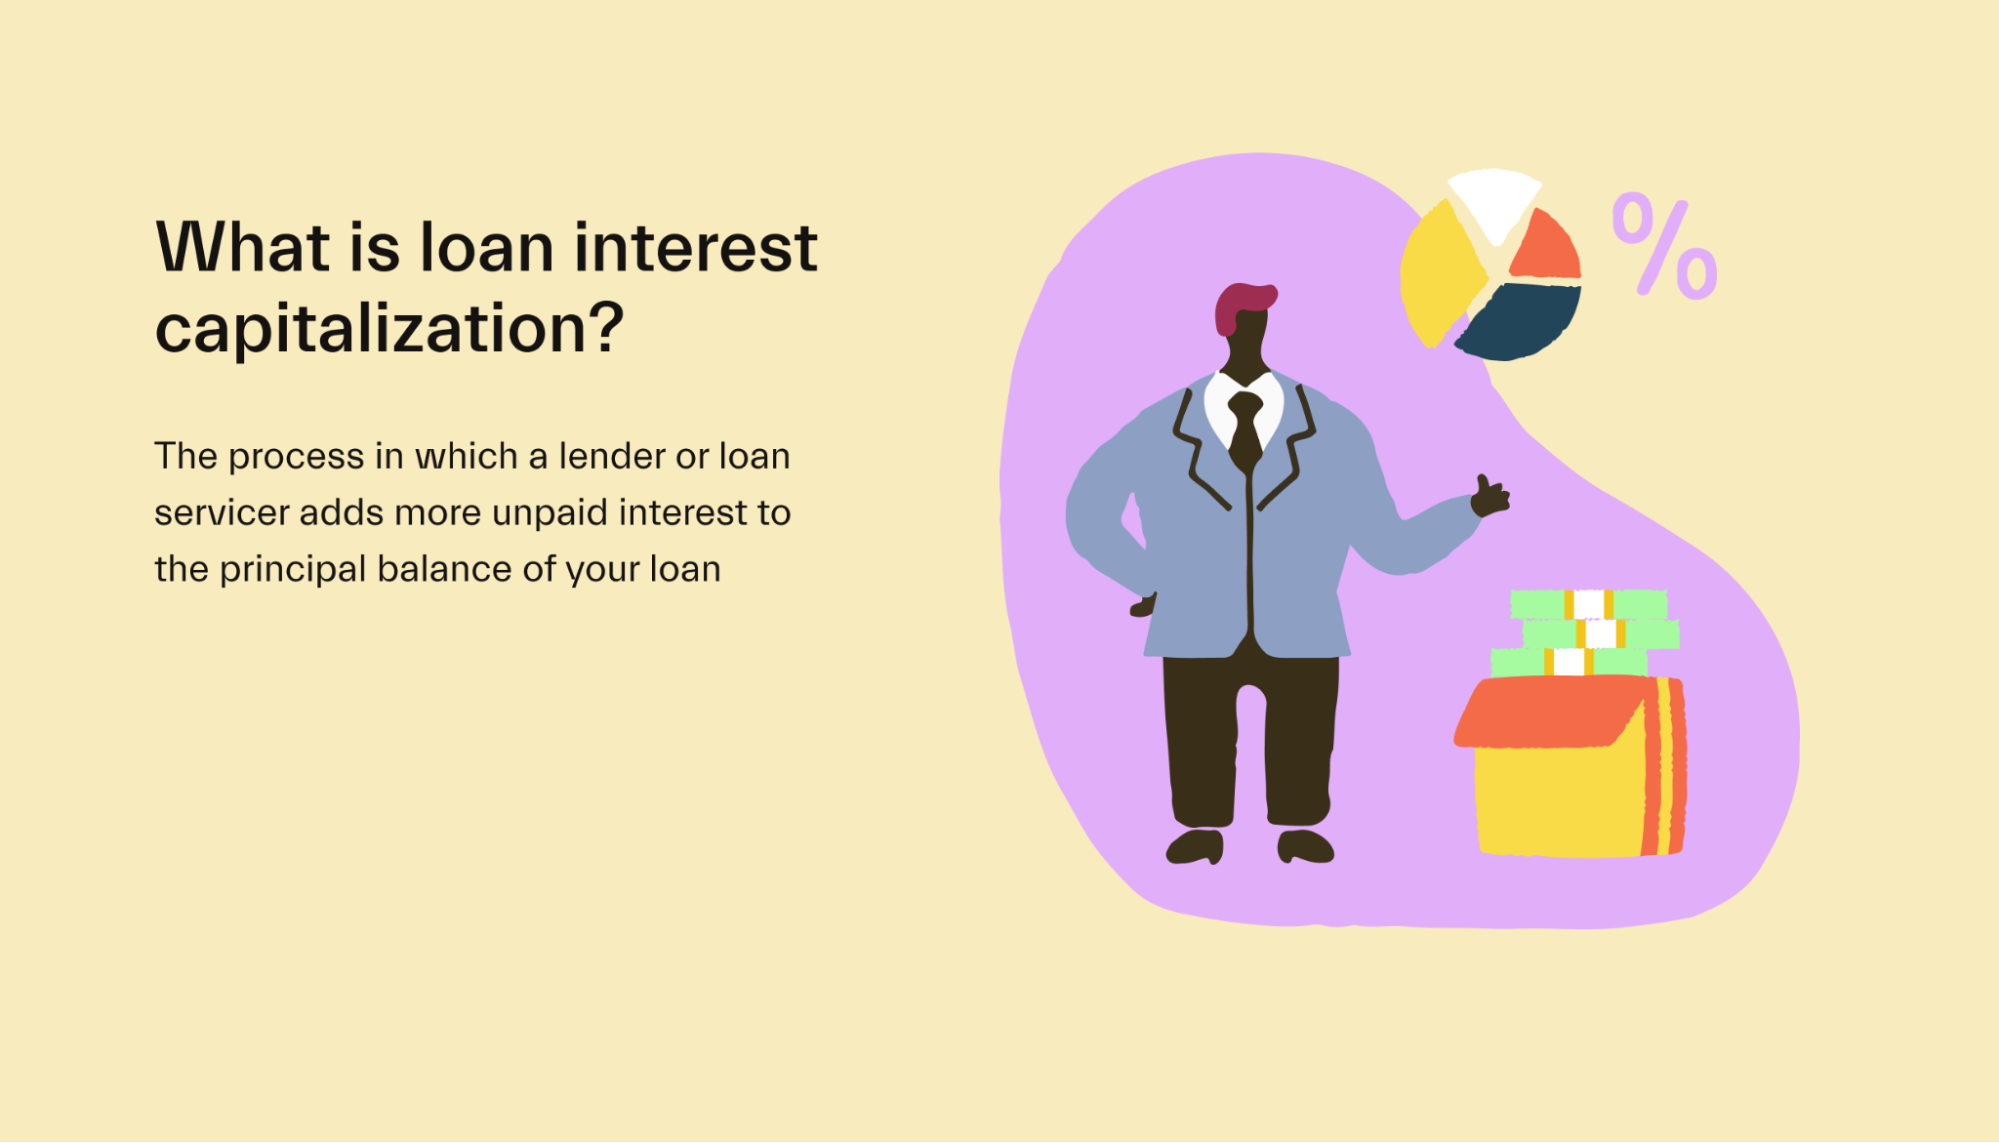 Loan interest capitalization